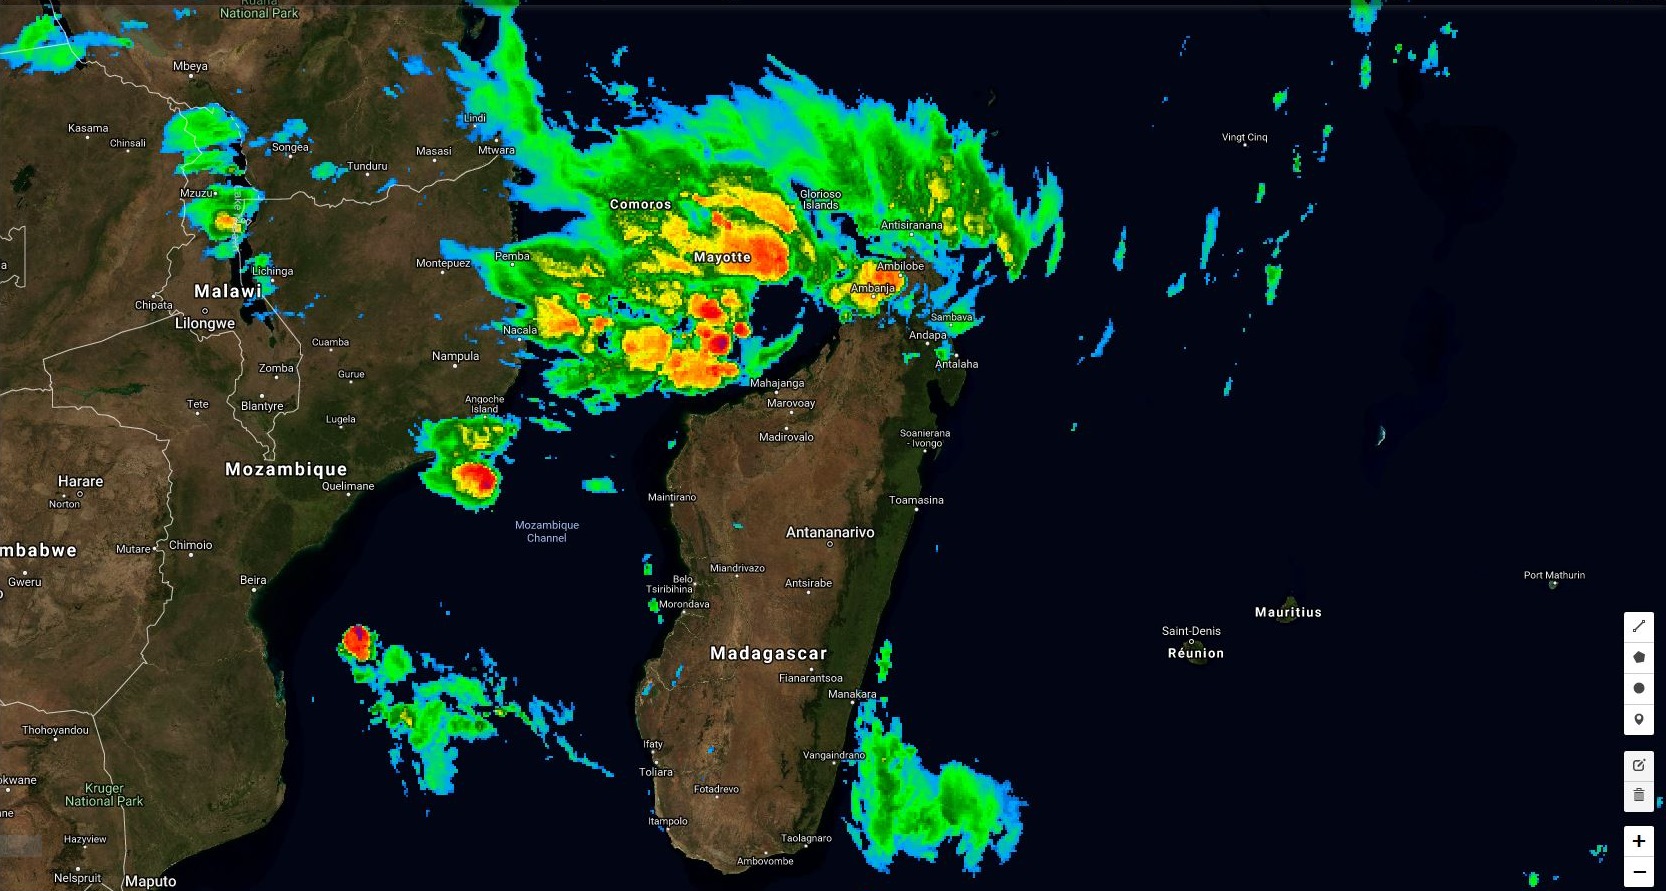 Satellite à 08h: à gauche de l'image DESMOND n'a pas fière allure. Au nord de Madagascar INVEST 93S est sous haute surveillance alors que le risque de fortes pluies est élevé. Le nord de la Grande Ile est en alerte rouge.